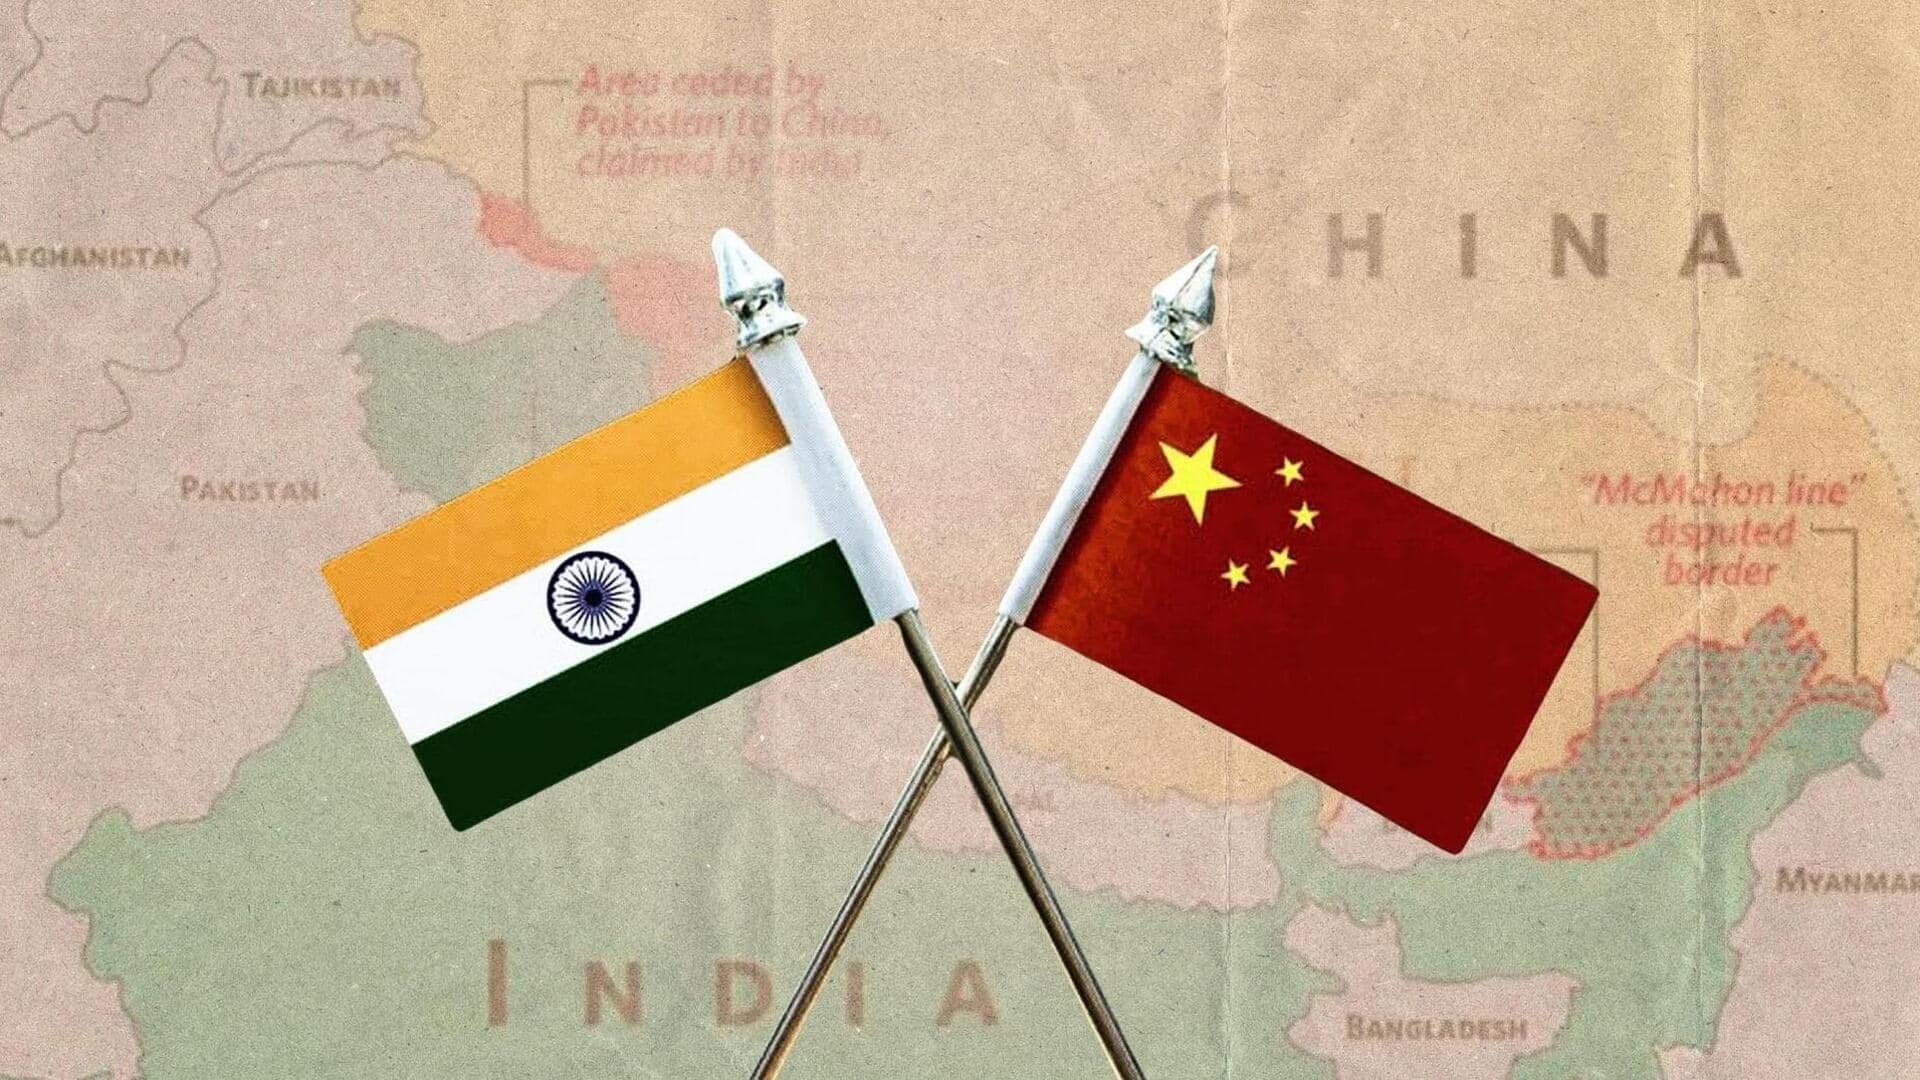 चीन के अरुणाचल को अपना हिस्सा बताने पर भारत की कड़ी प्रतिक्रिया, बेतुका और निराधार बताया 